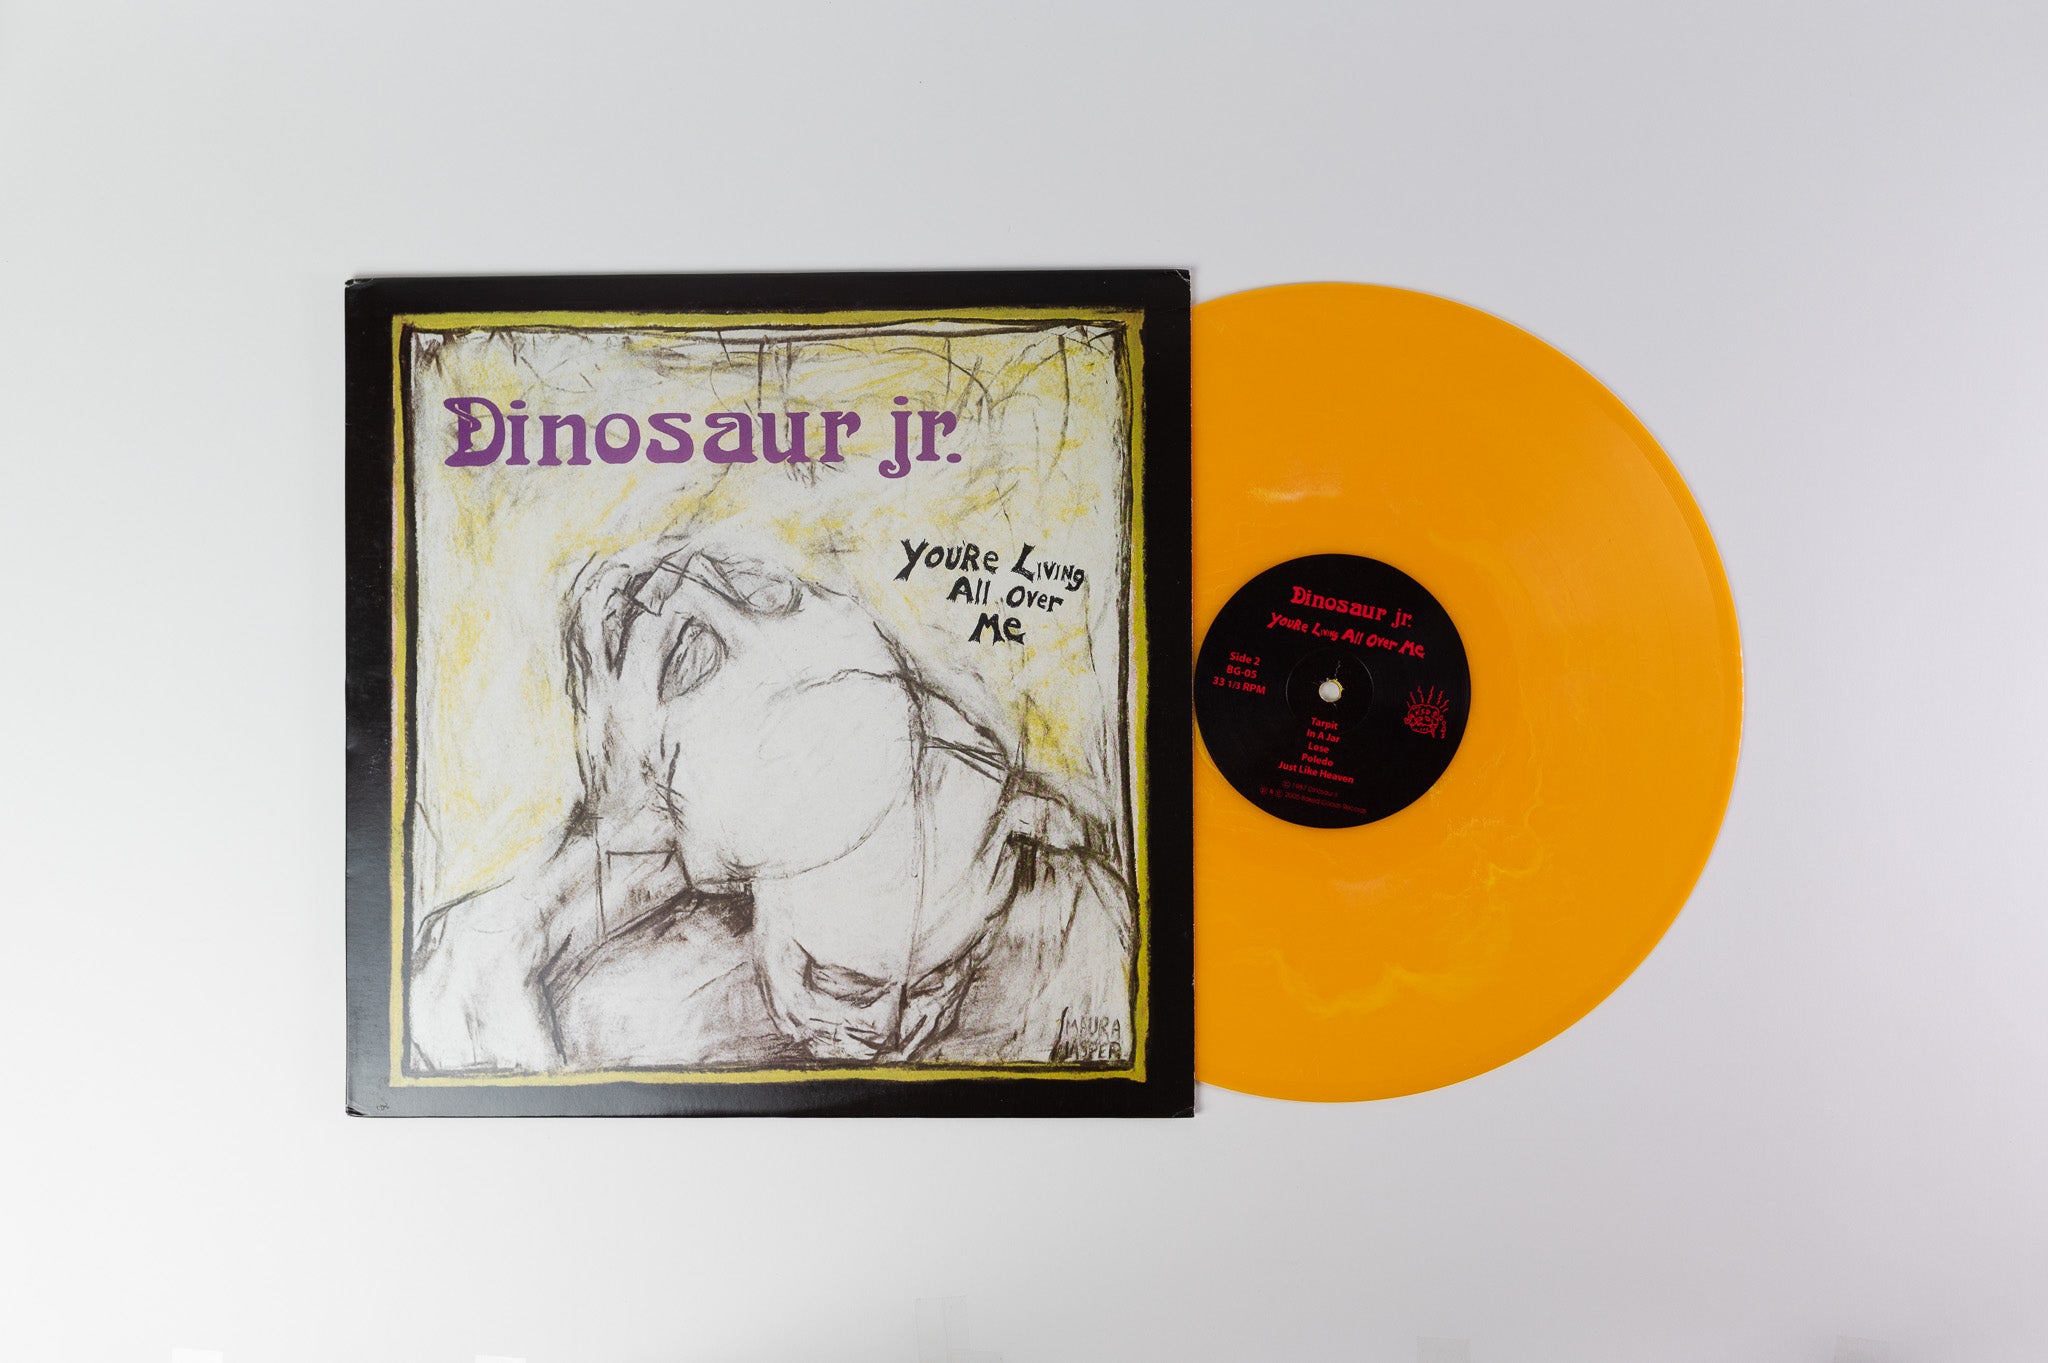 Dinosaur Jr. - You're Living All Over Me on Baked Goods Ltd Yellow Vinyl Reissue